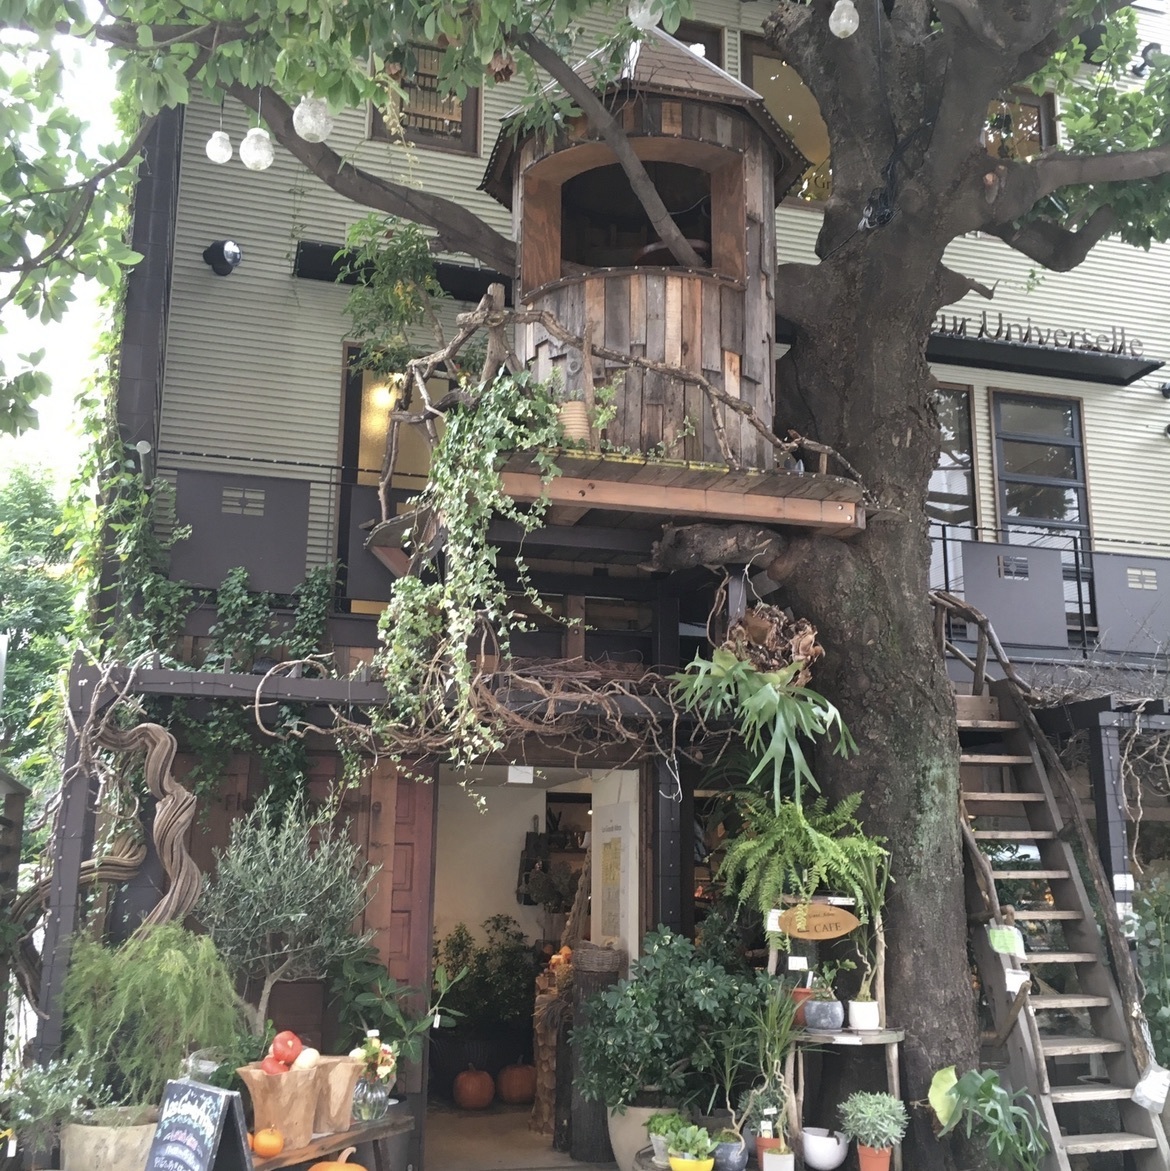 レ グラン ザルブル ドラマの撮影にも使われたツリーハウスのあるカフェ